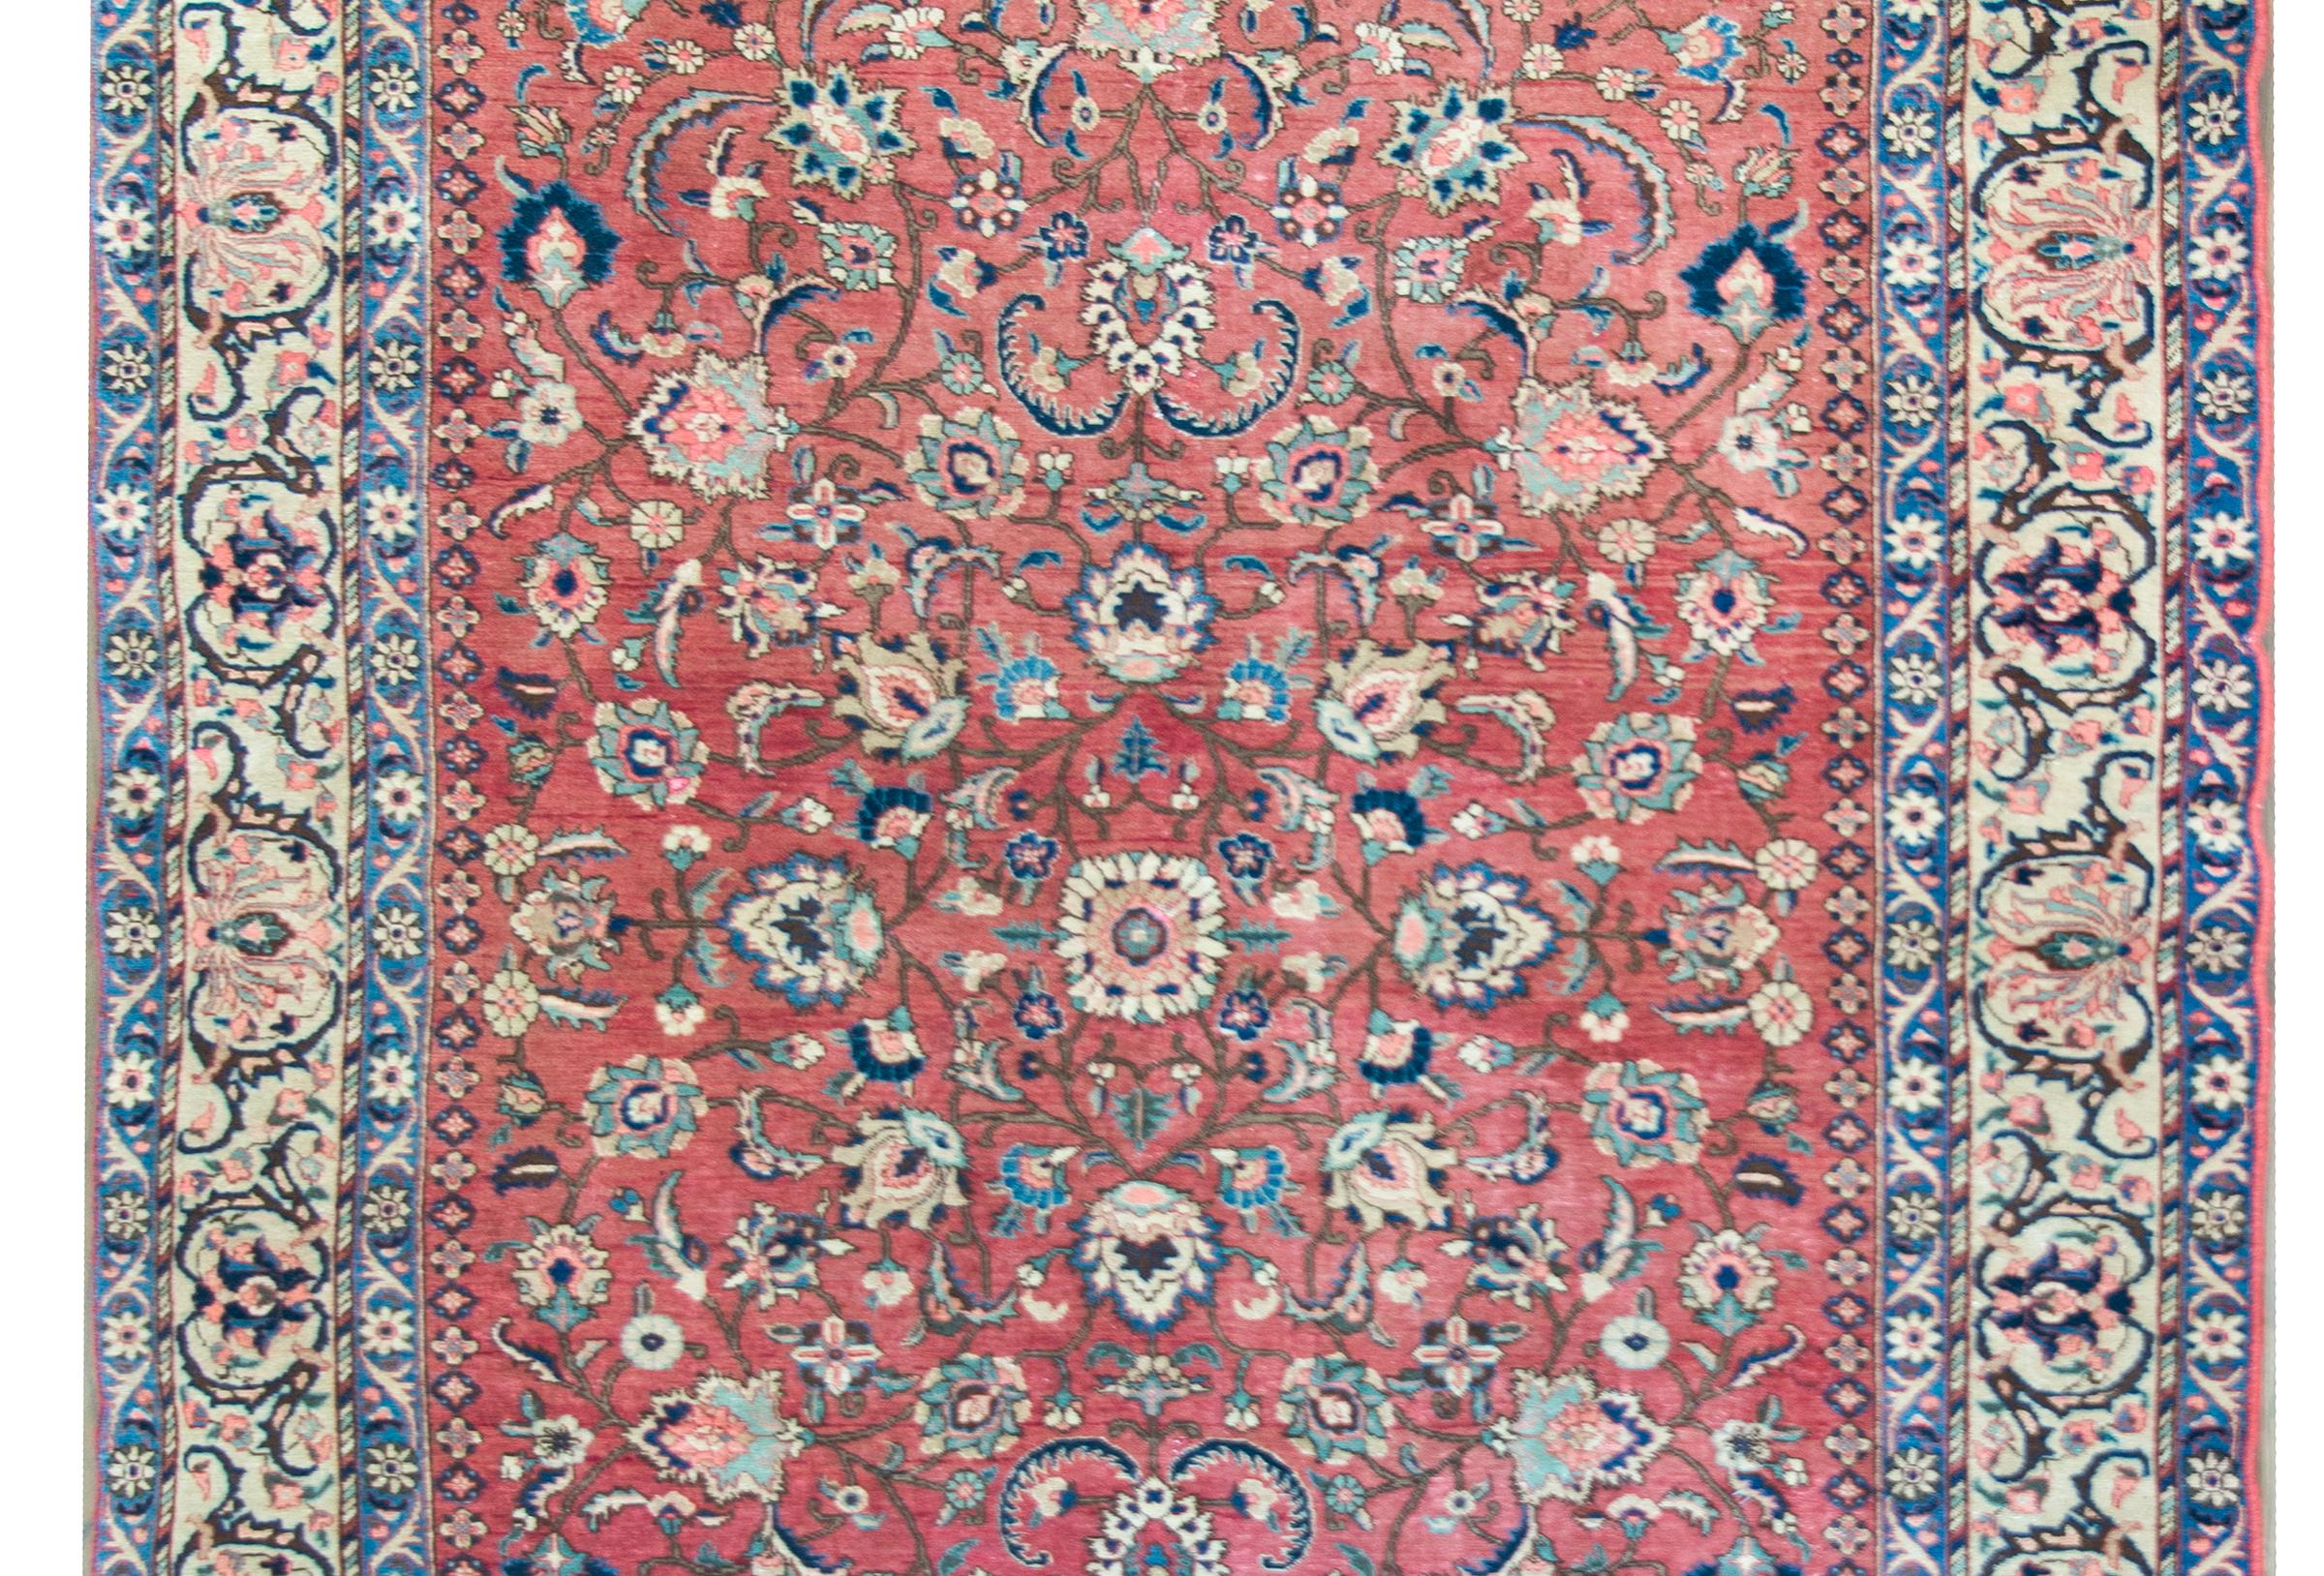 Ein prächtiger persischer Khoy-Teppich aus dem frühen 20. Jahrhundert mit einem aufwändigen, spiegelnden Blumenmuster mit einer zentralen Blume, die von komplizierten Ranken und weiteren Blumen umgeben ist, umgeben von einer komplexen Bordüre mit